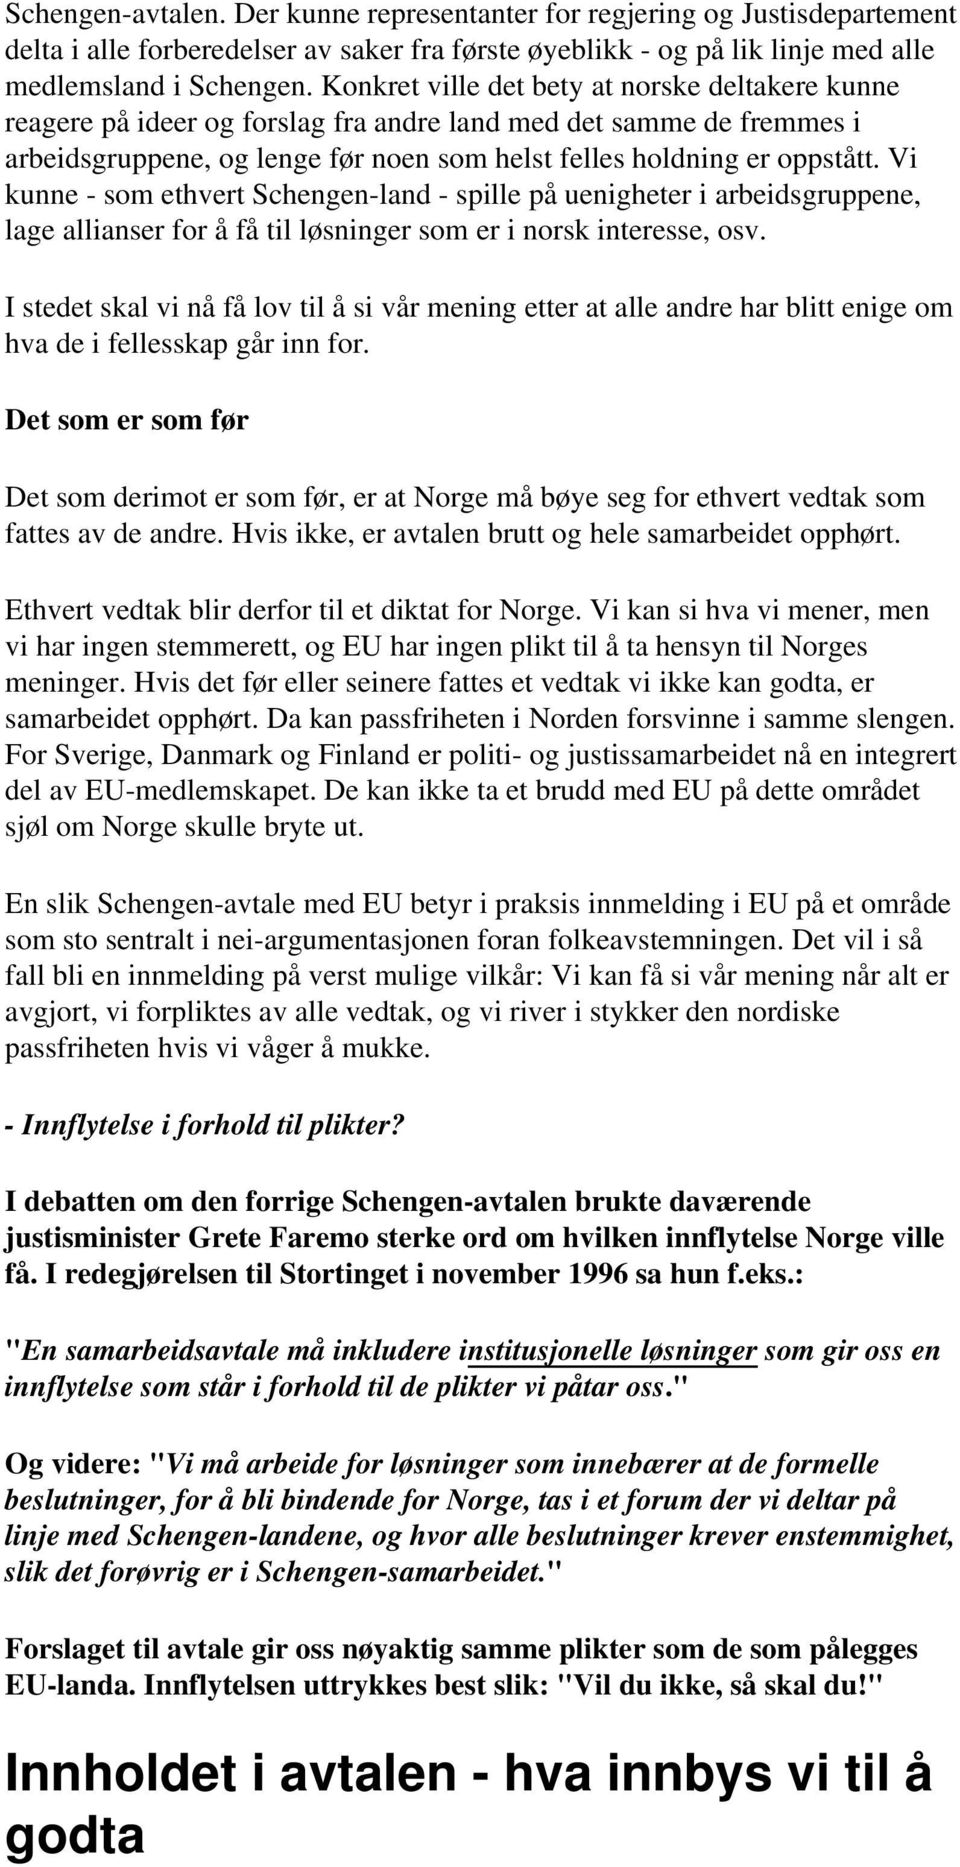 Vi kunne - som ethvert Schengen-land - spille på uenigheter i arbeidsgruppene, lage allianser for å få til løsninger som er i norsk interesse, osv.